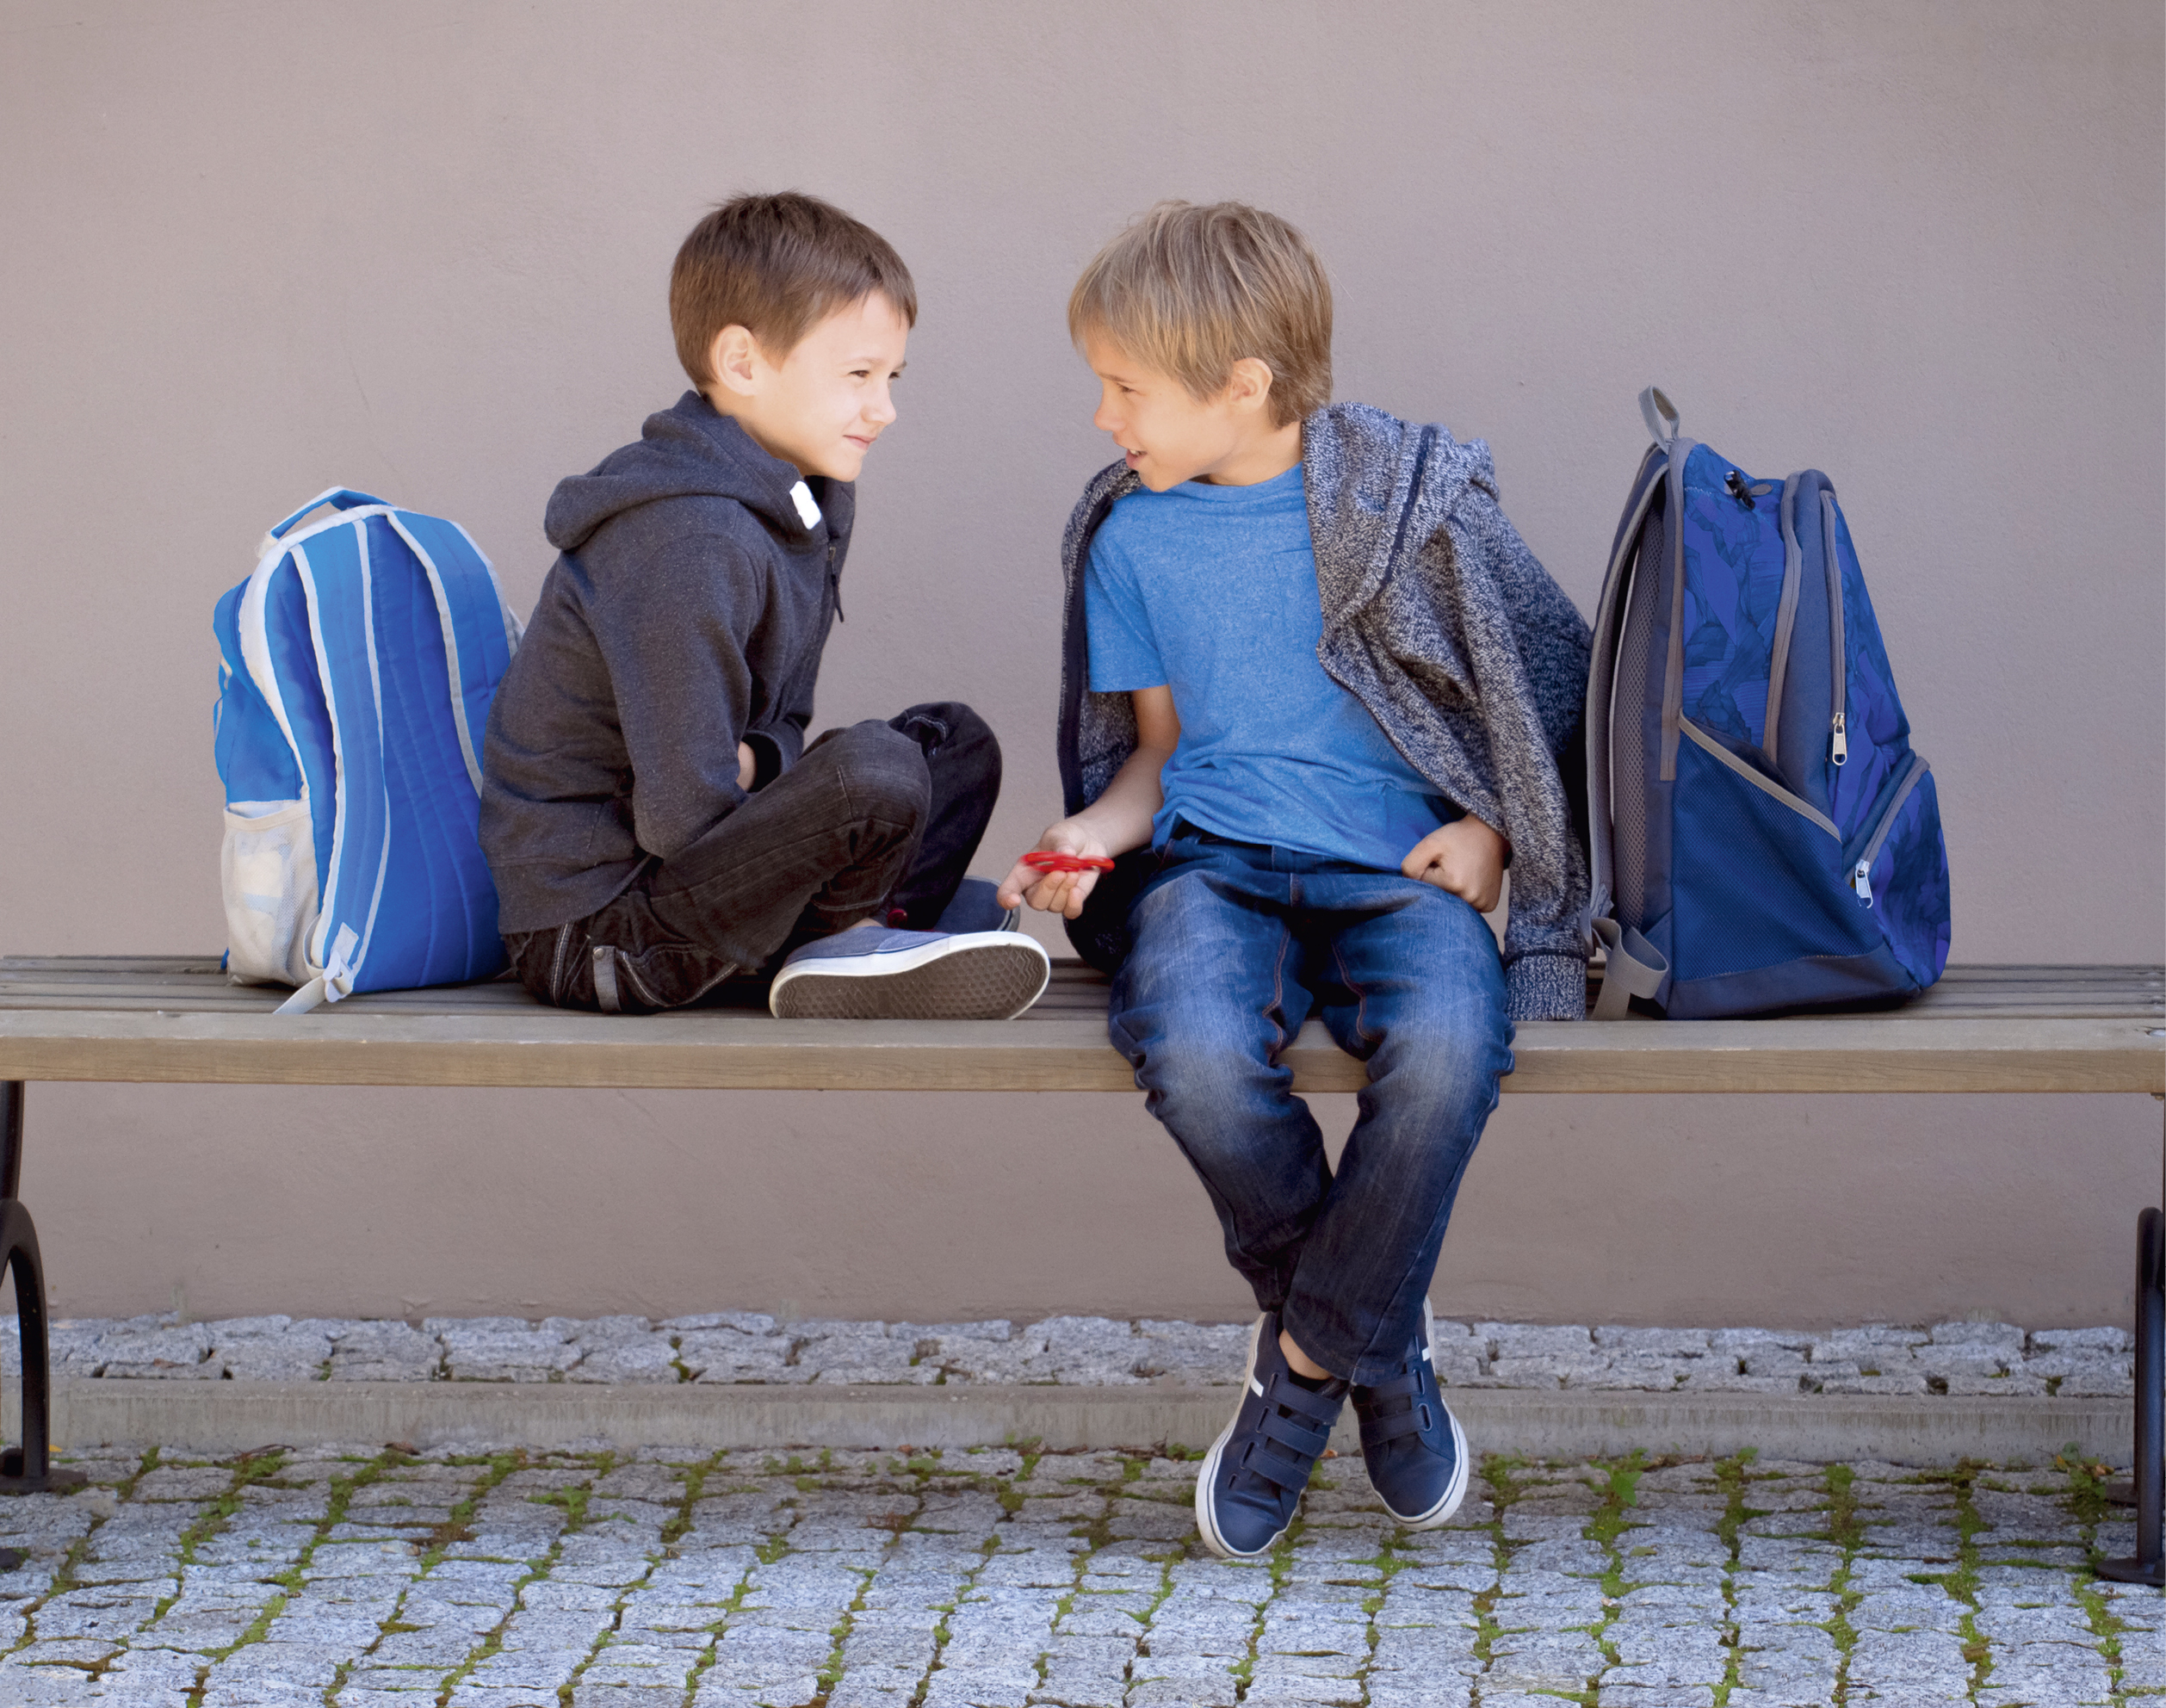 2 boys 1 door. Два мальчика с рюкзаками. Школьник с рюкзаком. Два мальчика разговаривают в школе. Школьник с рюкзаком сидит.